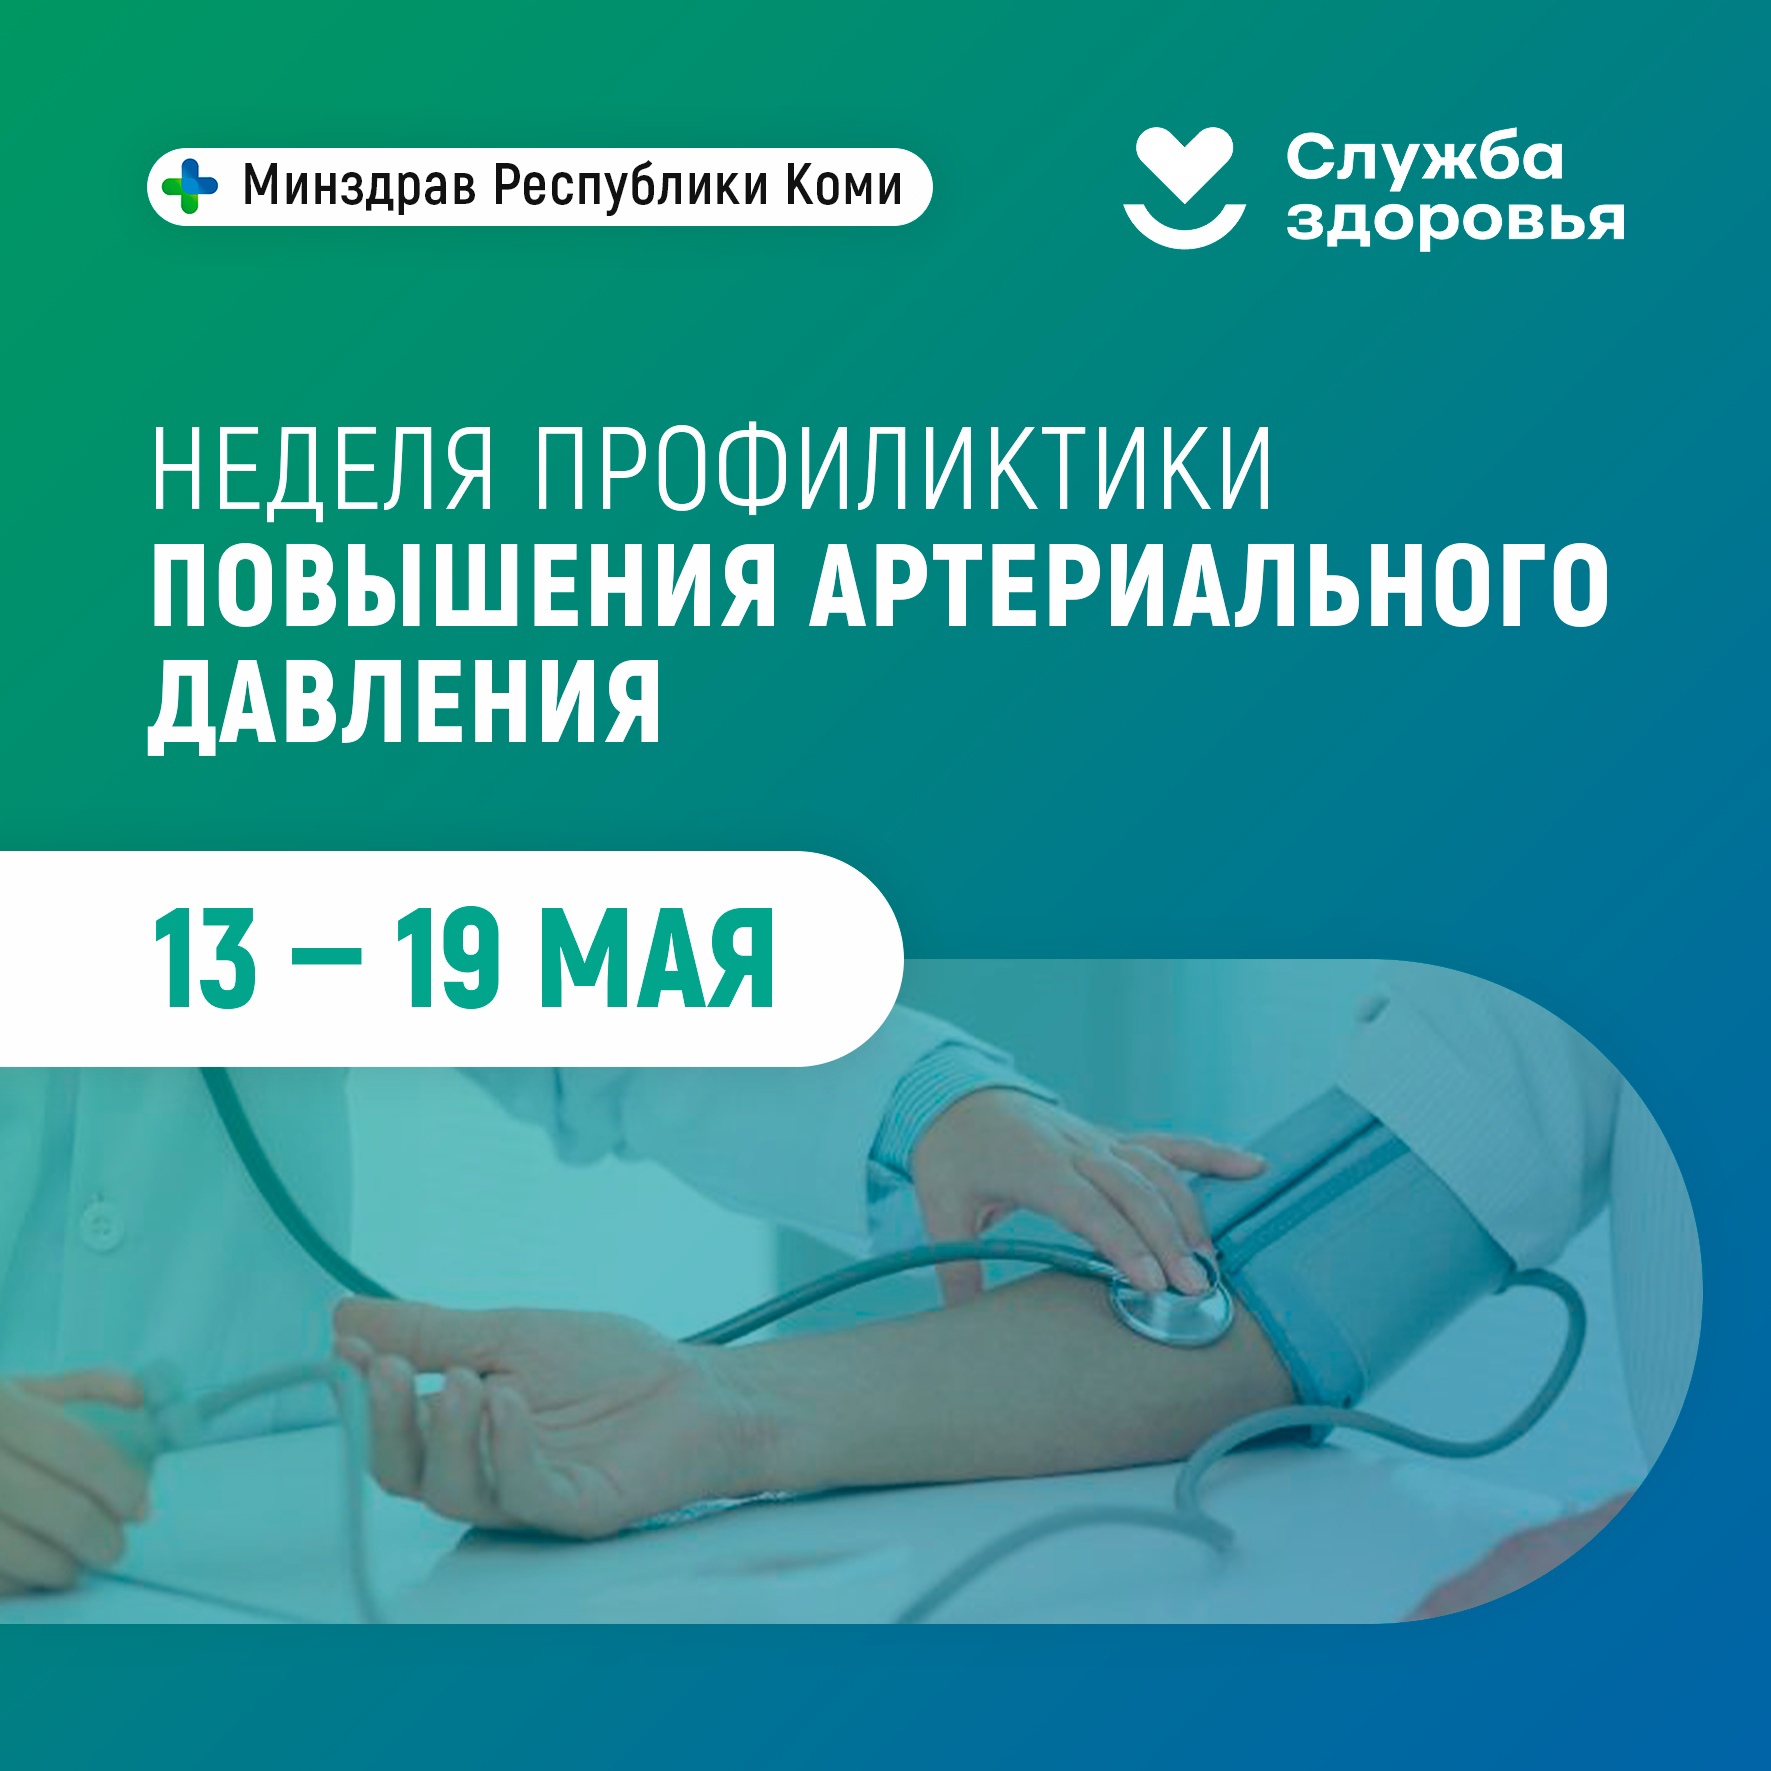 С 13 по 19 мая проводится Неделя профилактики повышения артериального давления (в честь Всемирного дня борьбы с артериальной гипертонией 17 мая).